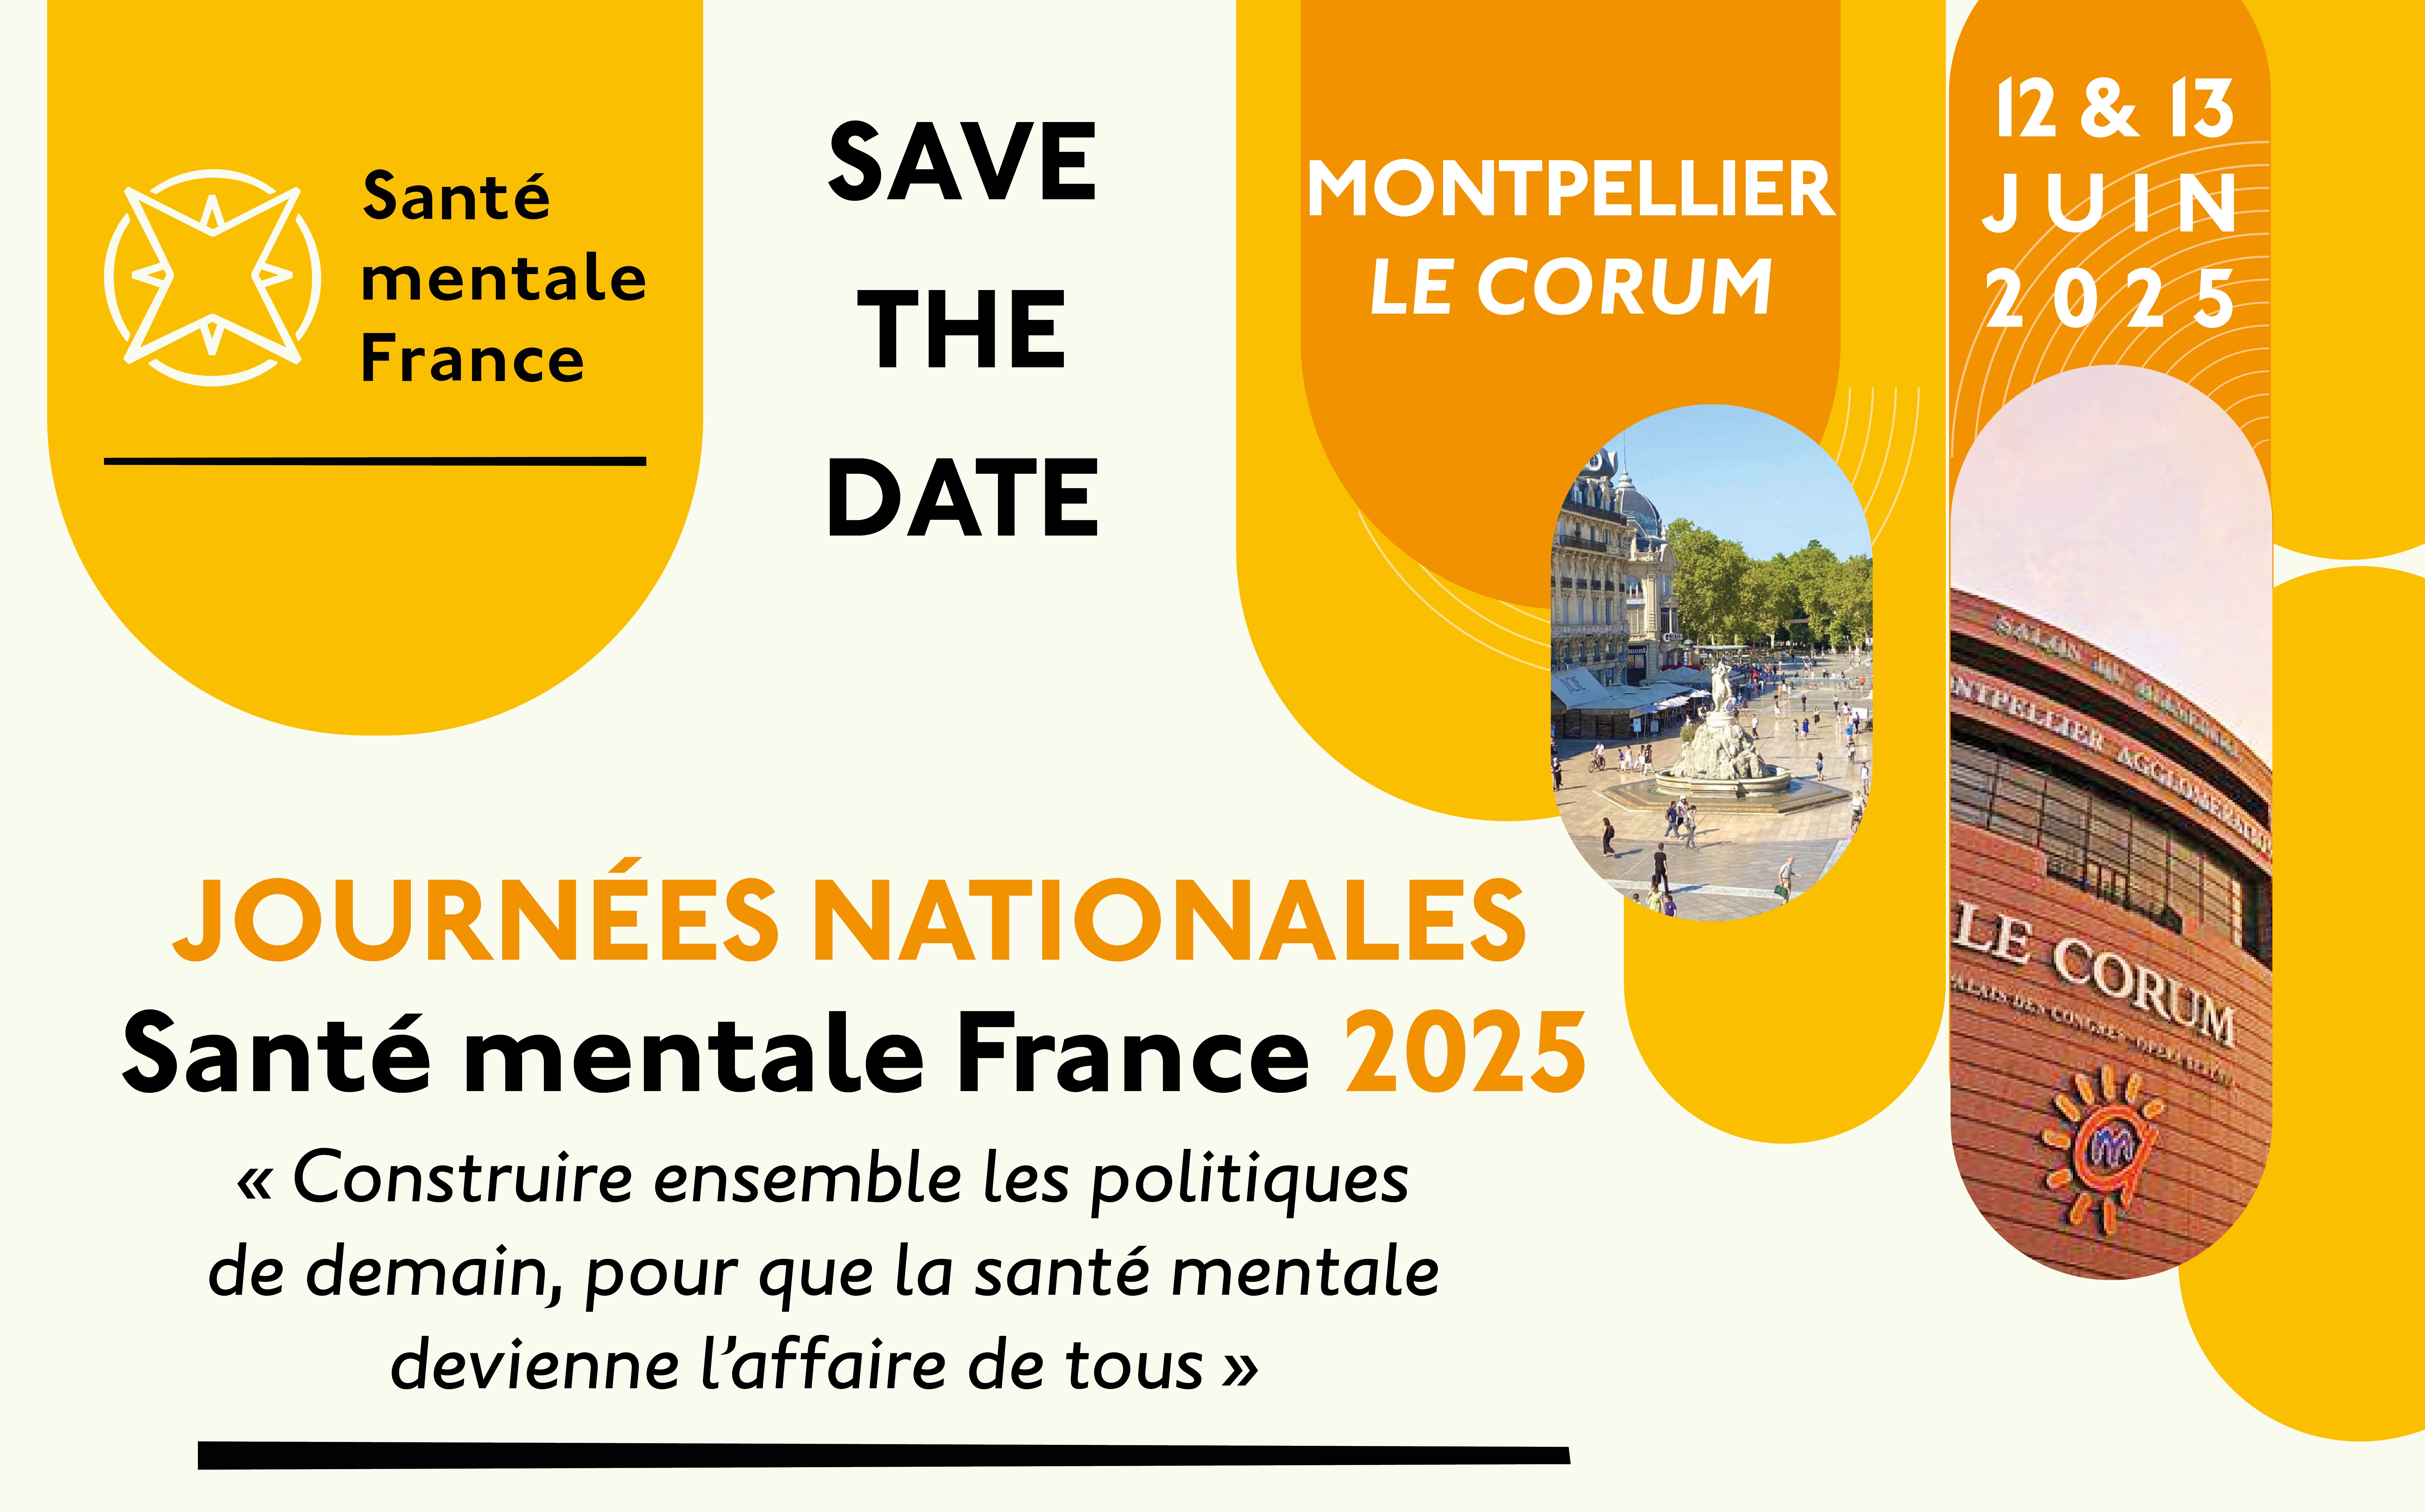 Image article : Save the date - Journées Nationales Santé mentale France - 12 & 13 Juin 2025 - Montpellier